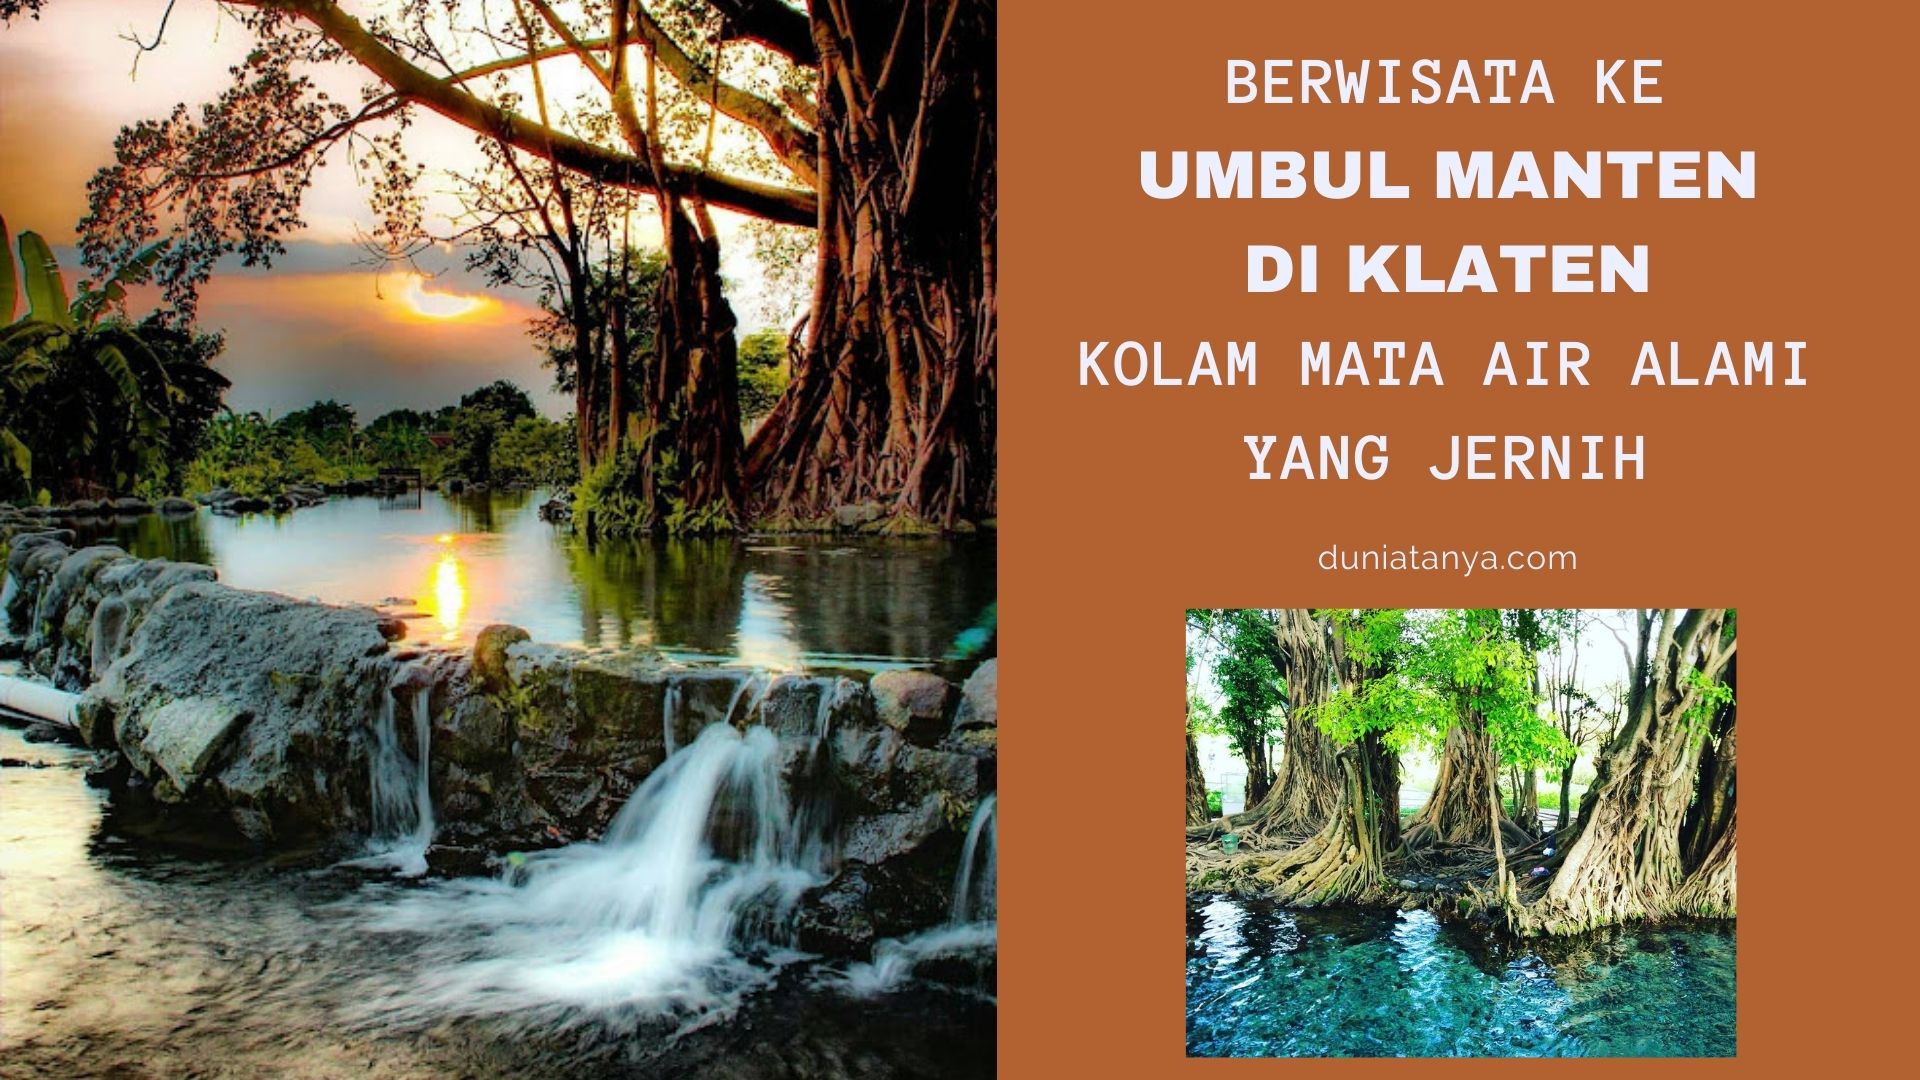 You are currently viewing Berwisata Ke Umbul Manten Di Klaten,Kolam Mata Air Alami Yang Jernih